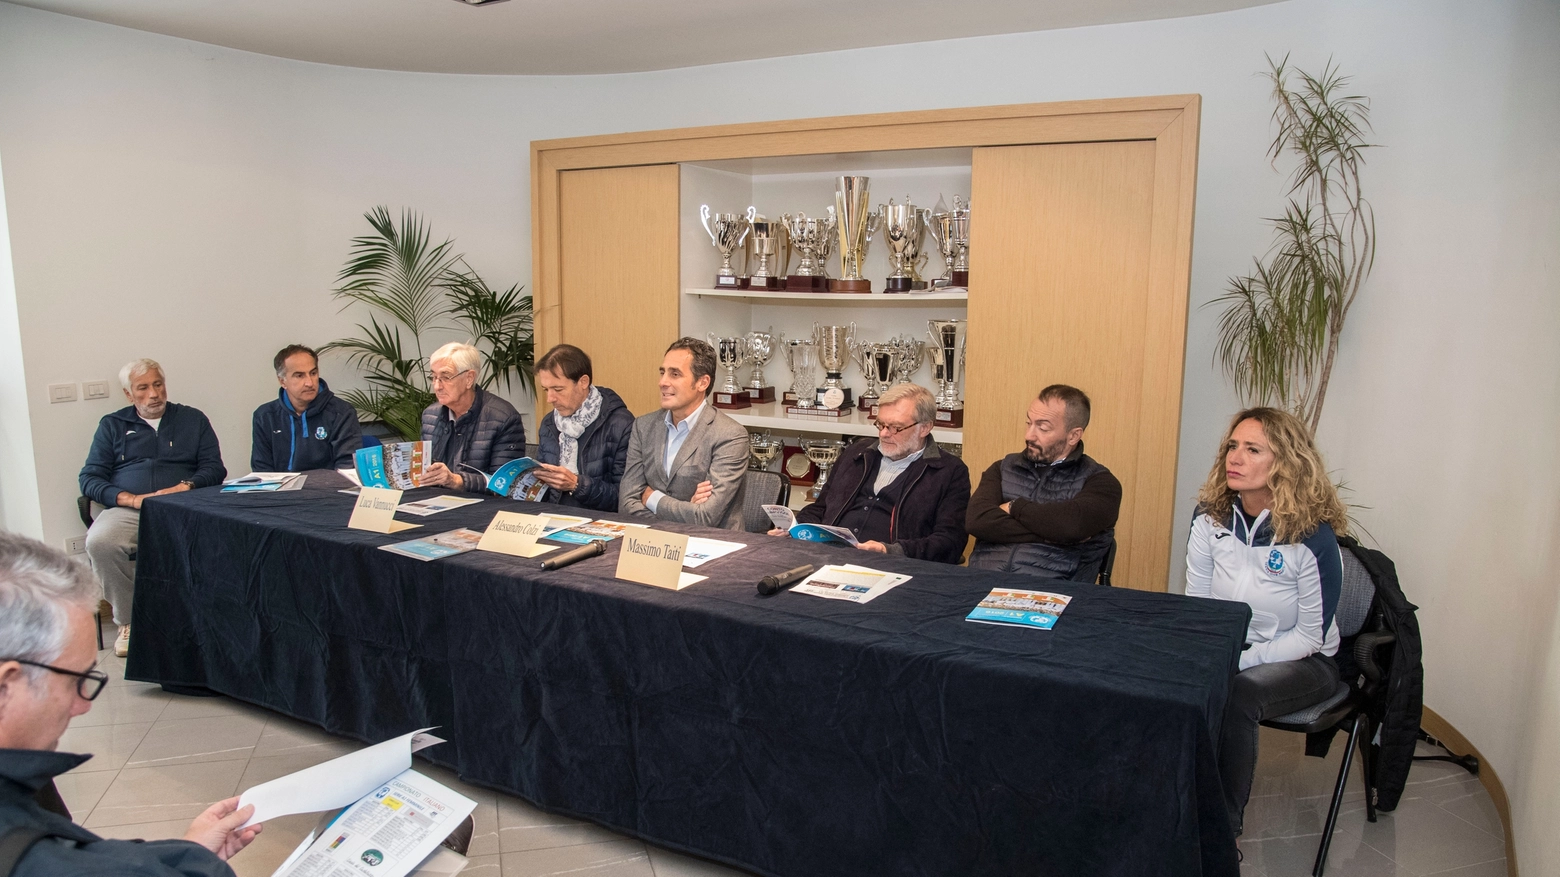 La presentazione ufficiale delle squadre al Tc Prato